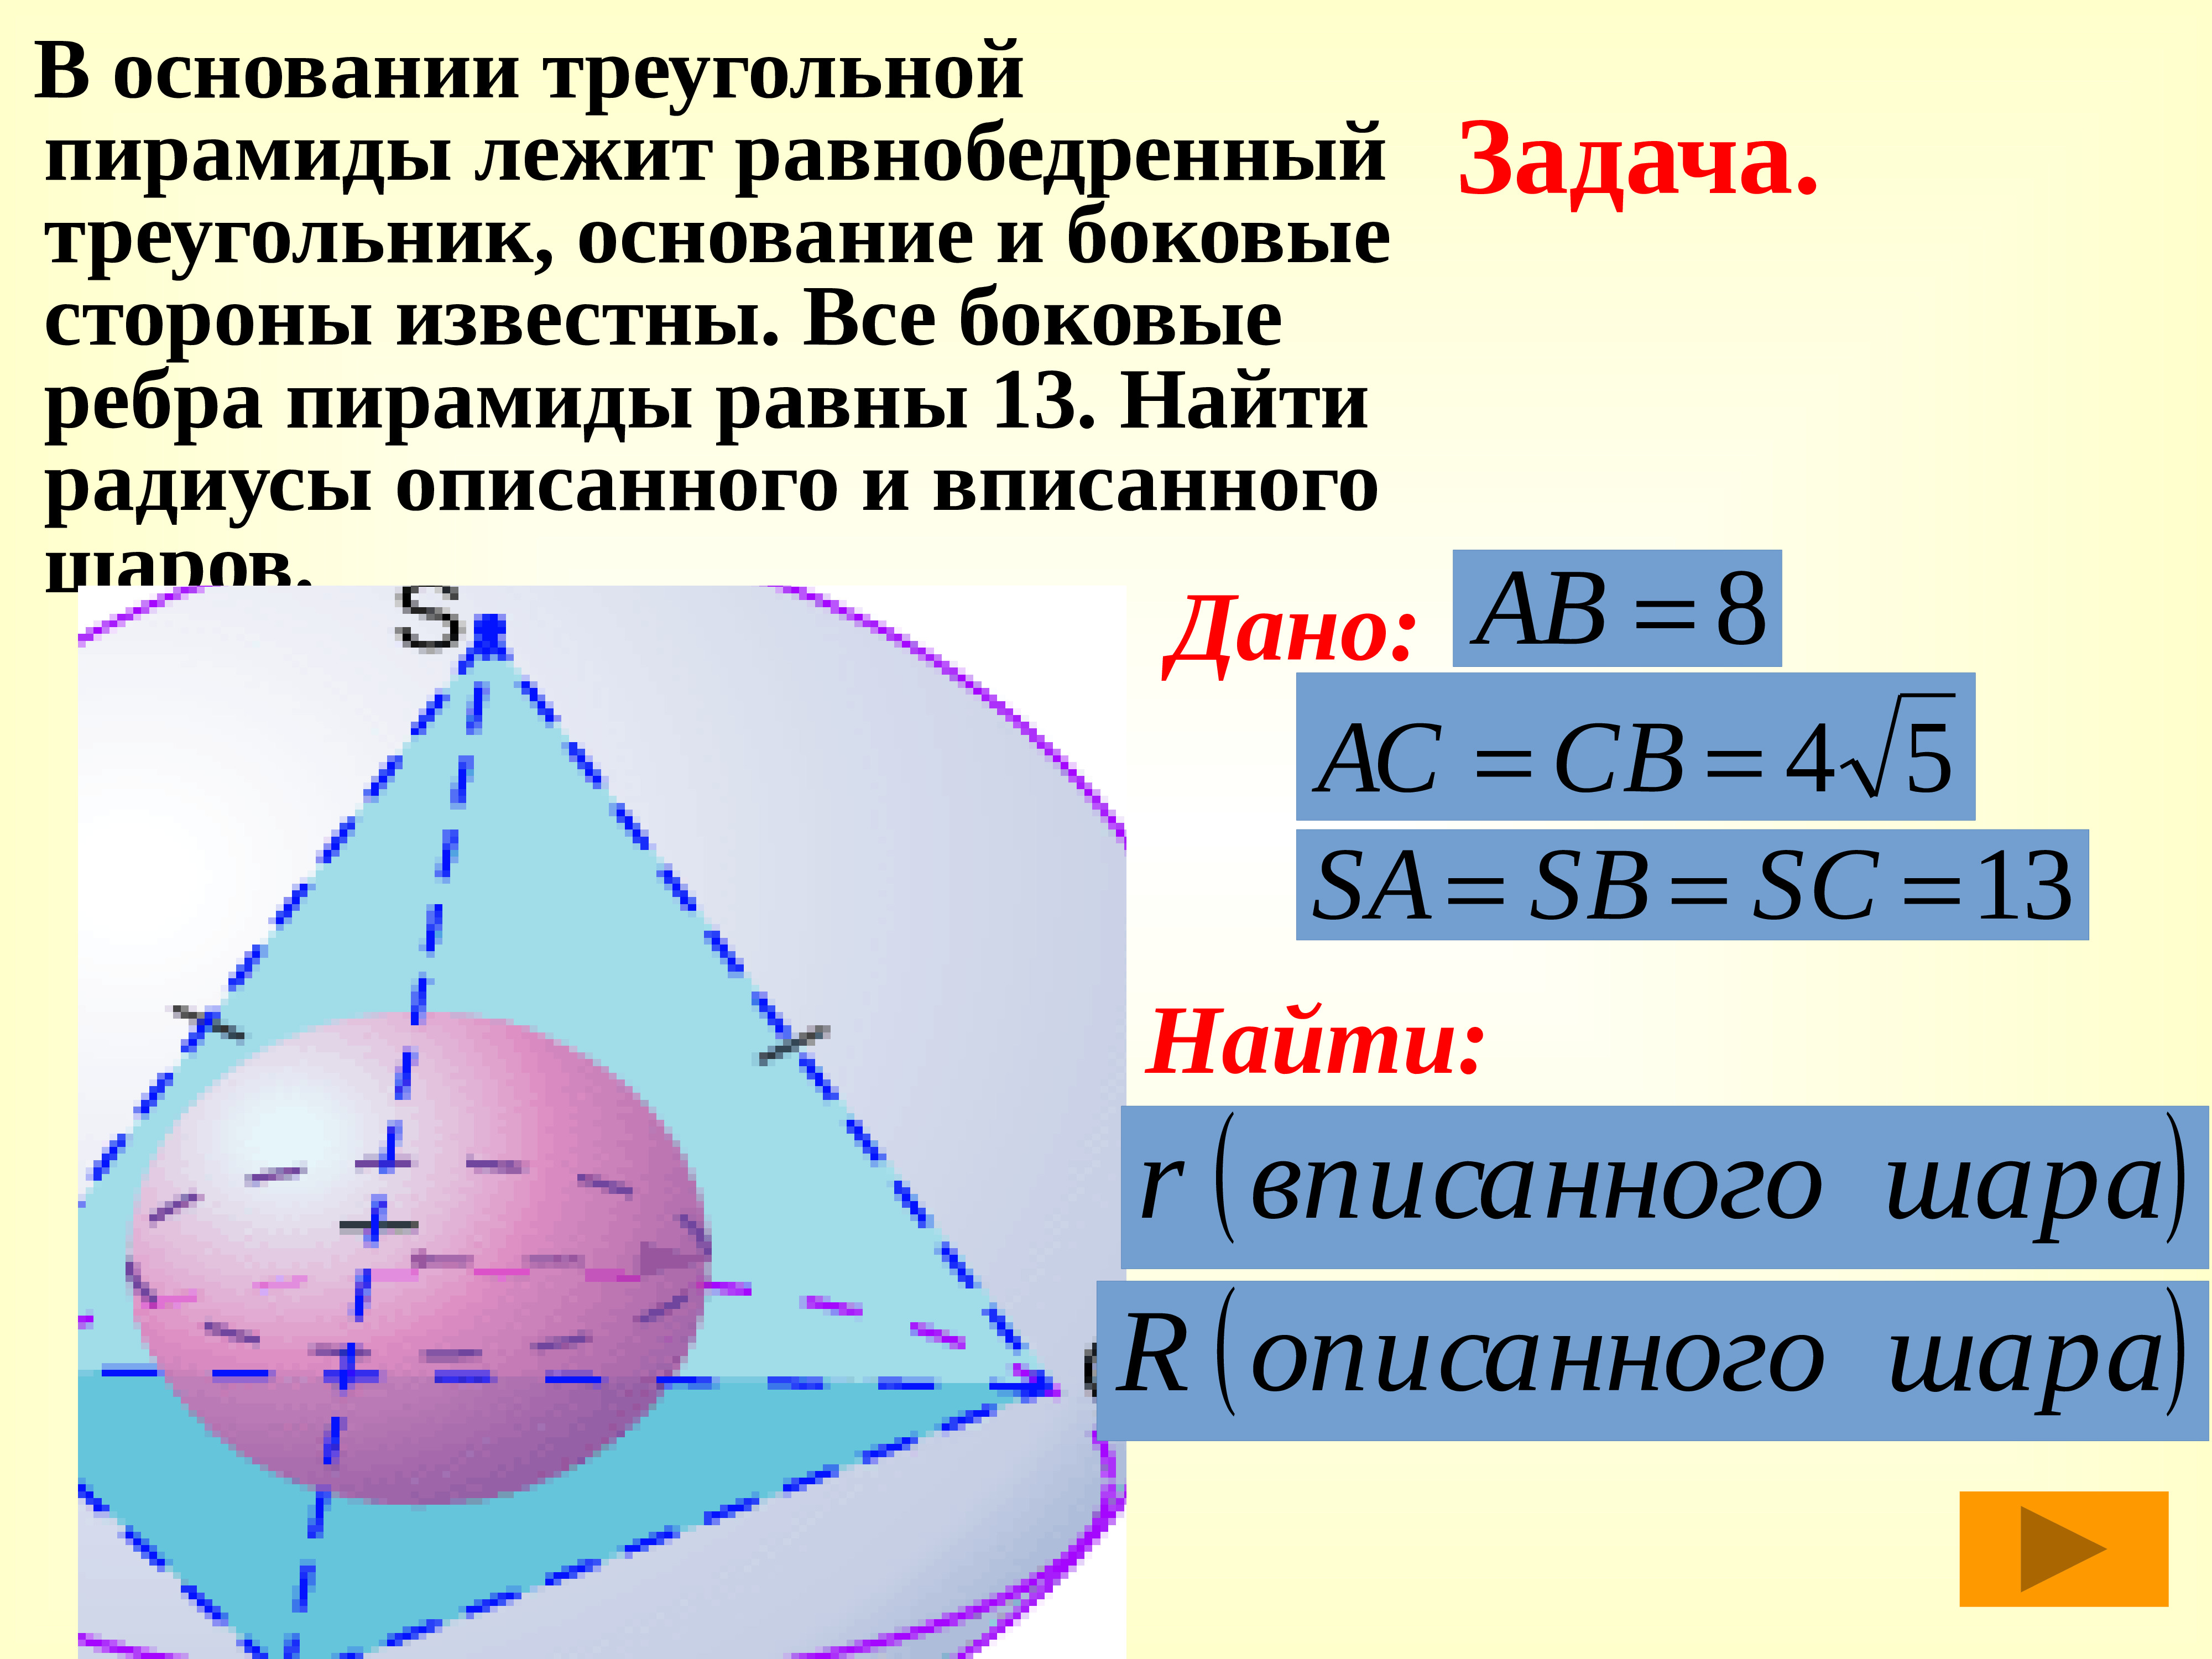 Радиус шара вписанного в треугольник. Шар вписанный в пирамиду. Радиус шара вписанного в пирамиду. Сфера описанная около пирамиды. Прадиус вписан Ой в пирамиду сферы.